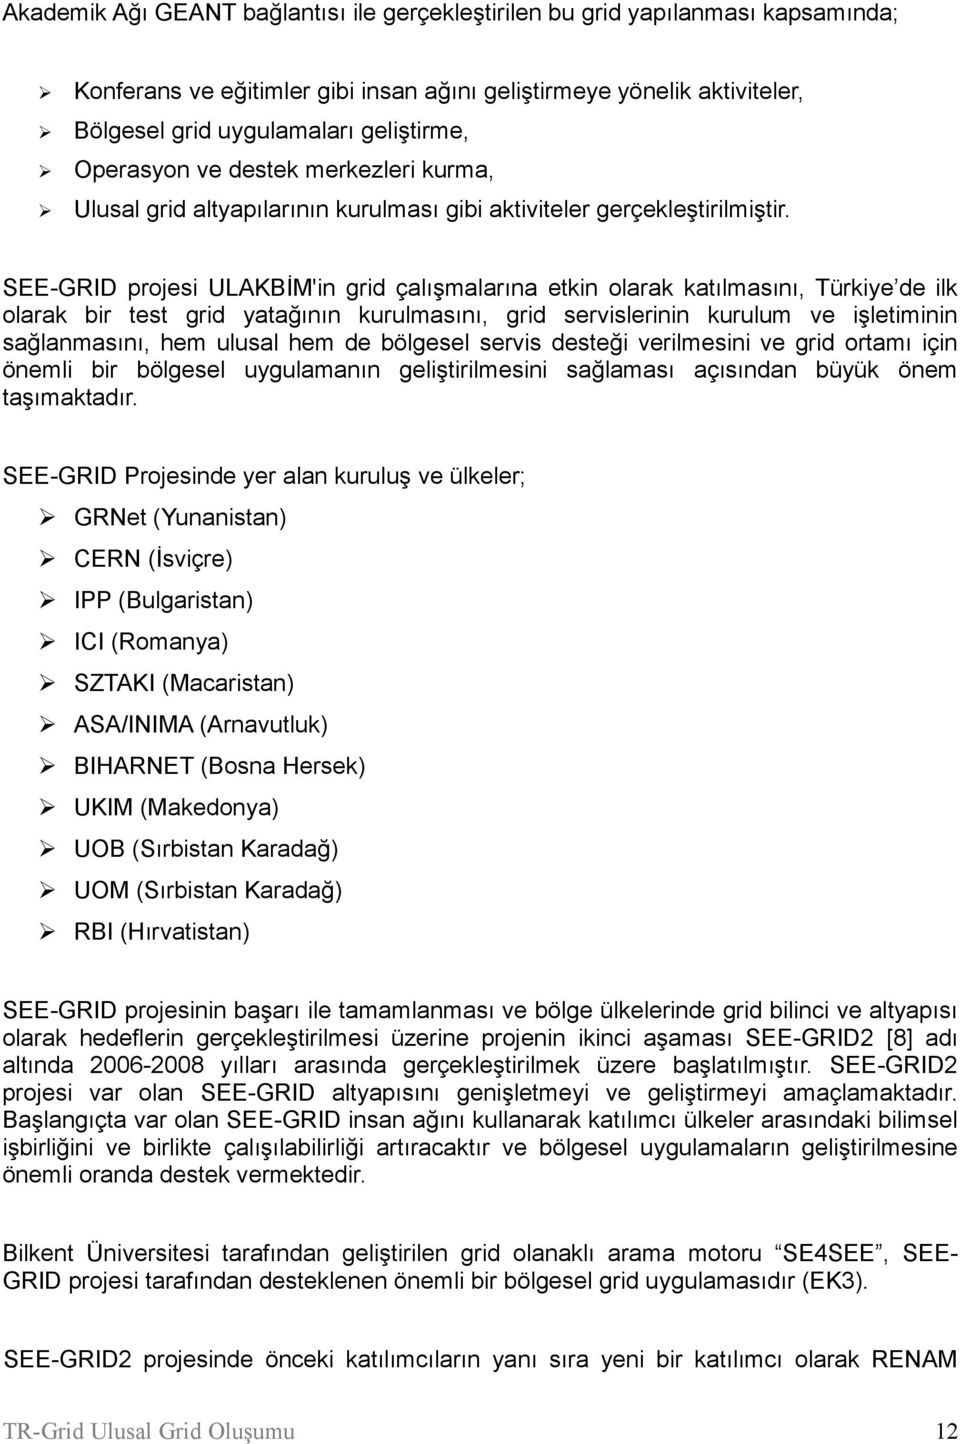 SEE-GRID projesi ULAKBİM'in grid çalışmalarına etkin olarak katılmasını, Türkiye de ilk olarak bir test grid yatağının kurulmasını, grid servislerinin kurulum ve işletiminin sağlanmasını, hem ulusal